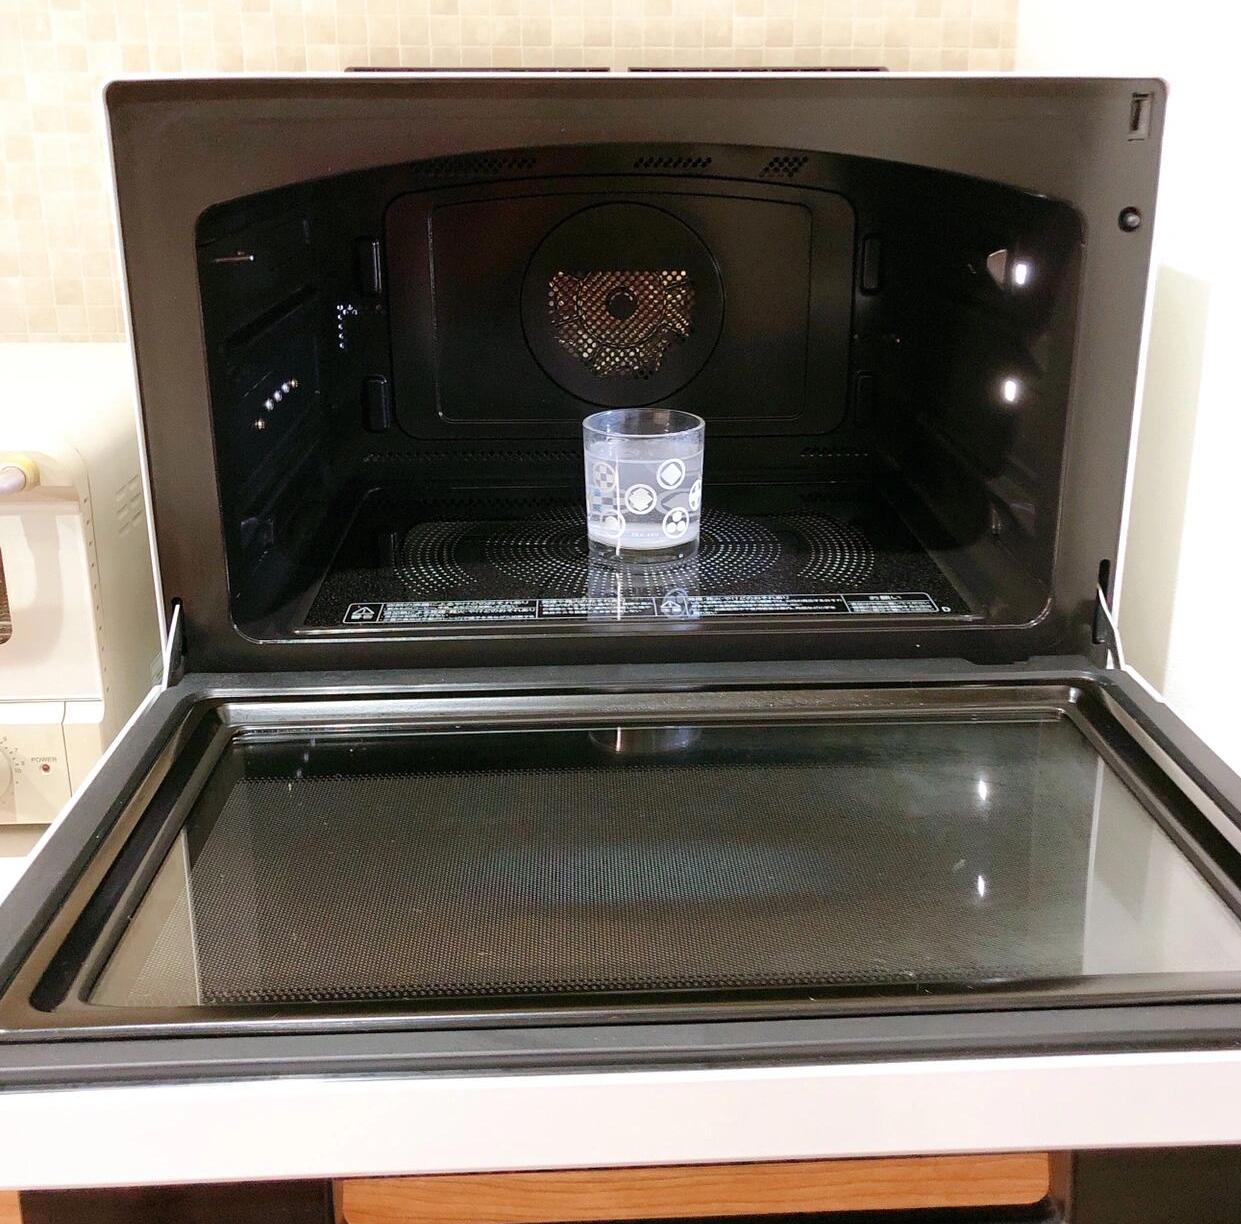 4 thiết bị nhà bếp quen thuộc này thực sự rất bẩn nhưng không được rửa thường xuyên - Ảnh 3.